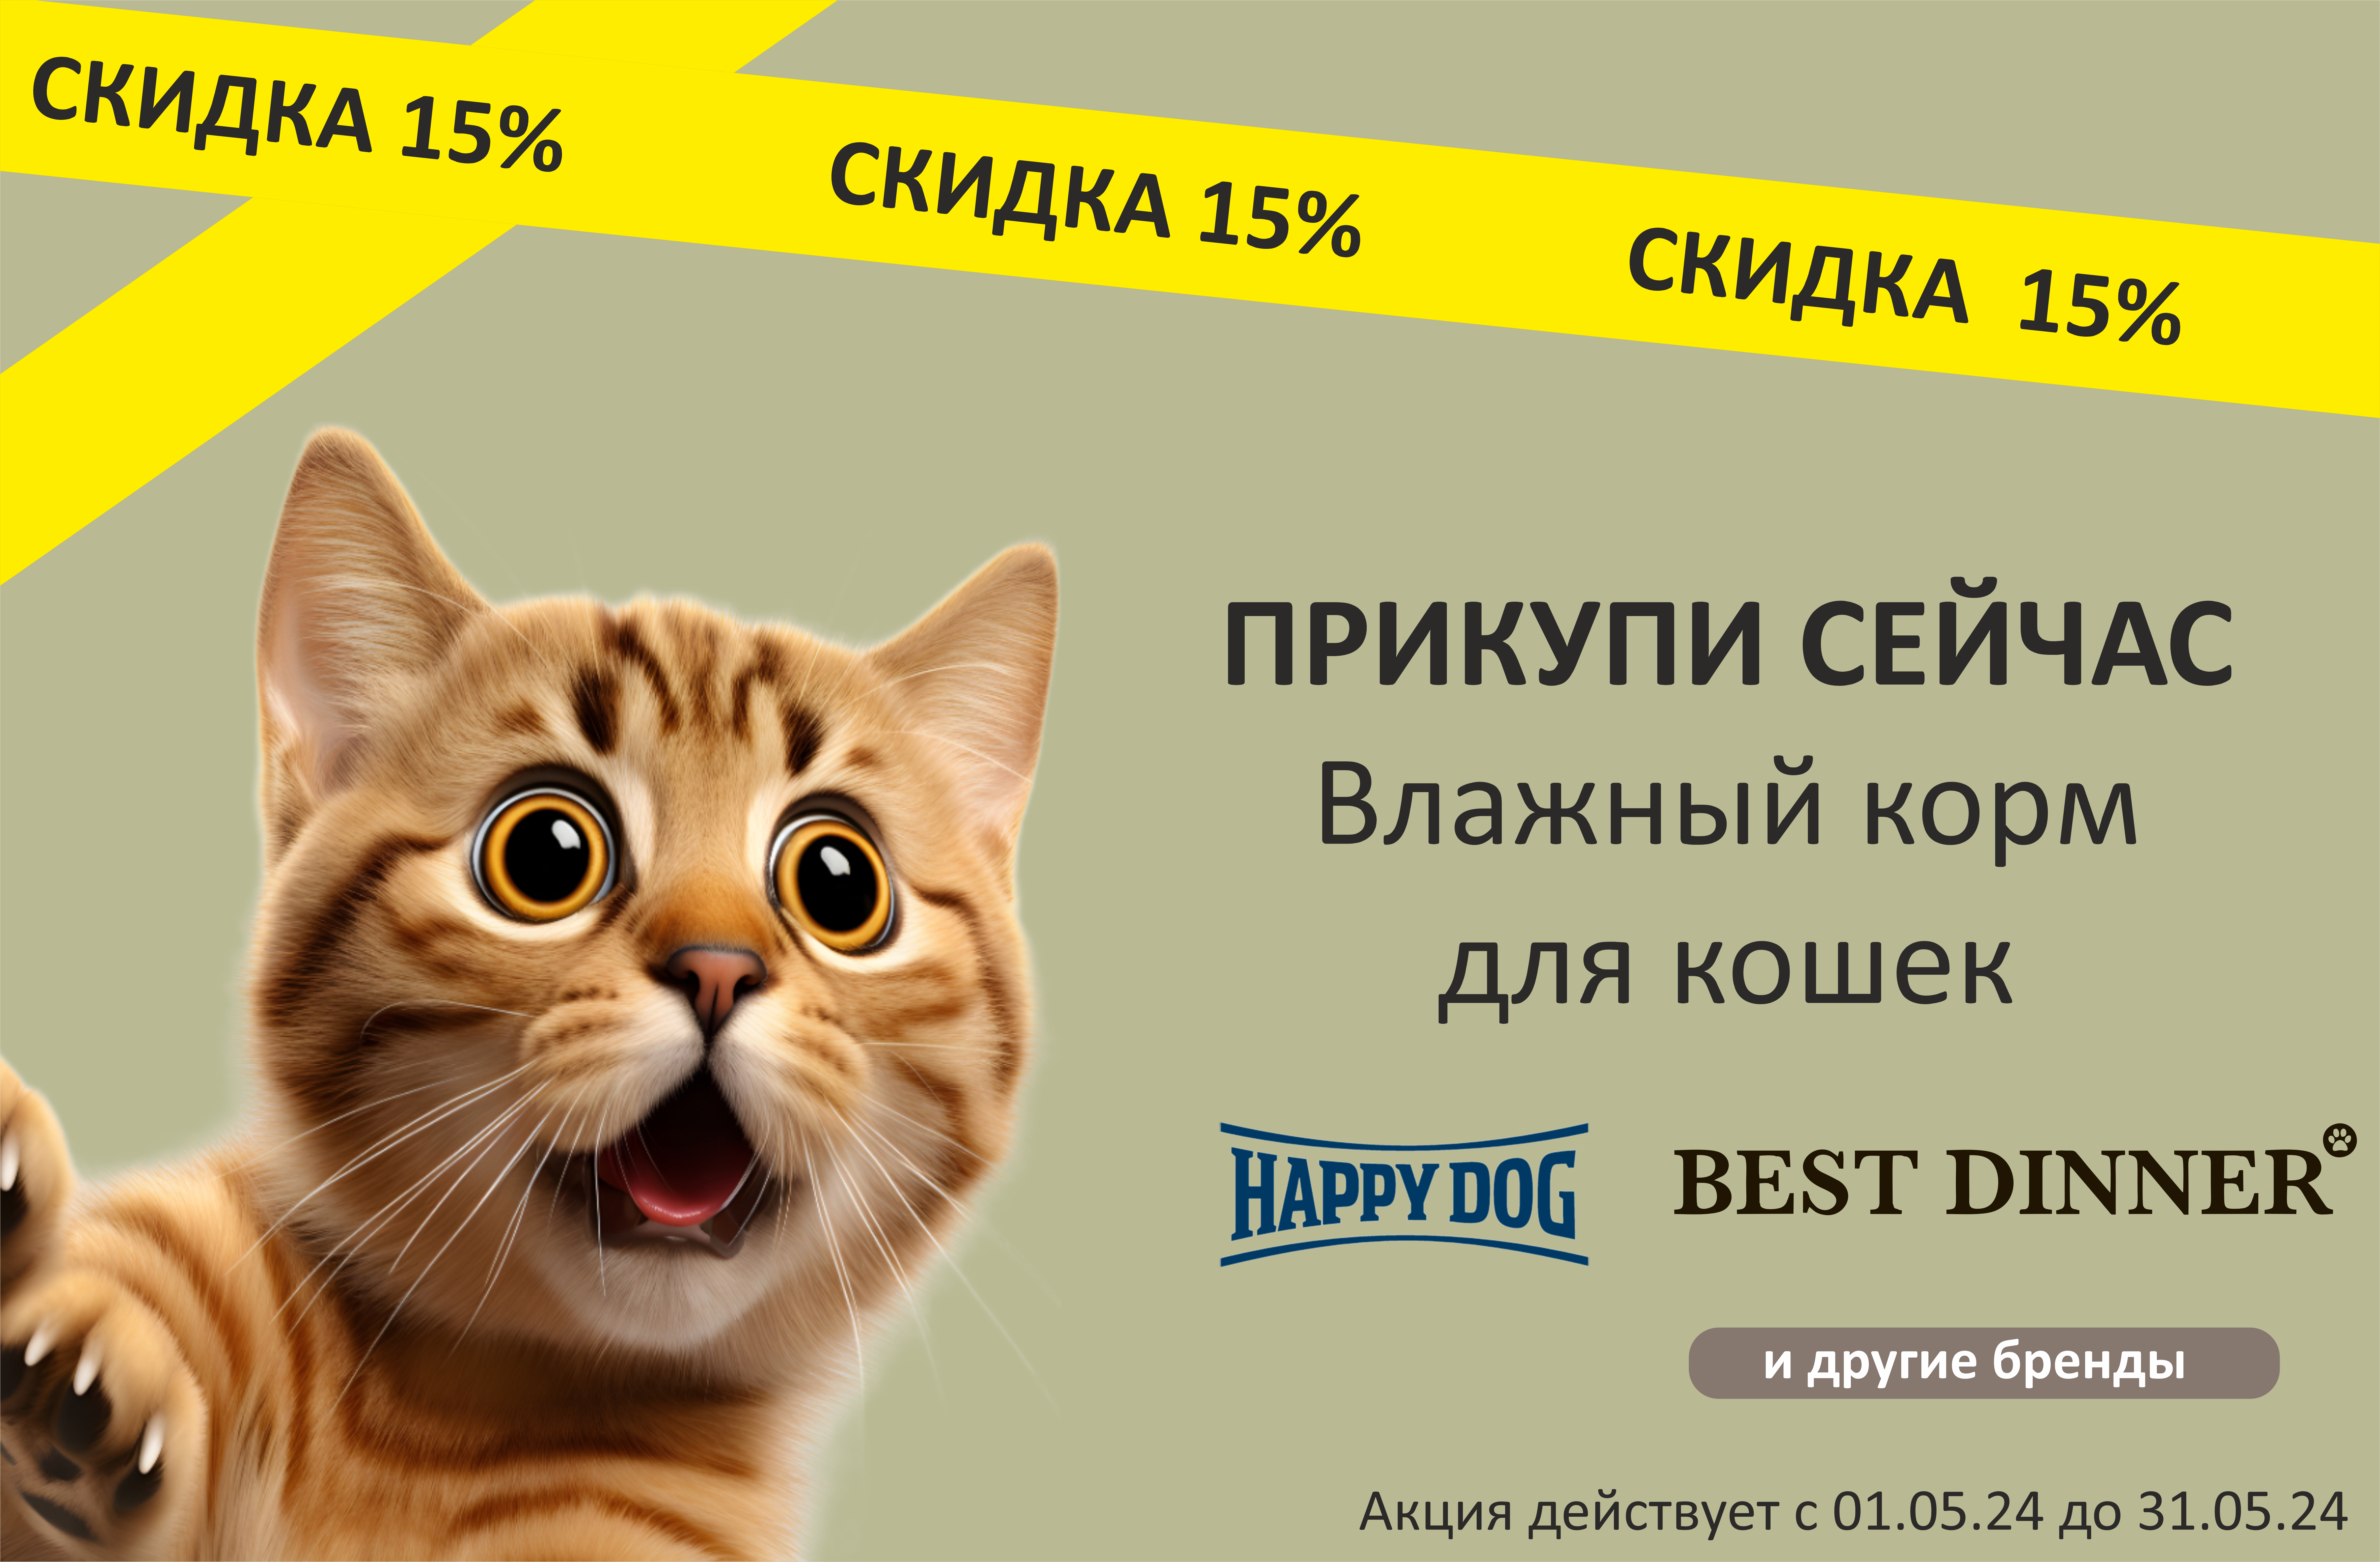 Влажный корм для кошек со скидкой 15%